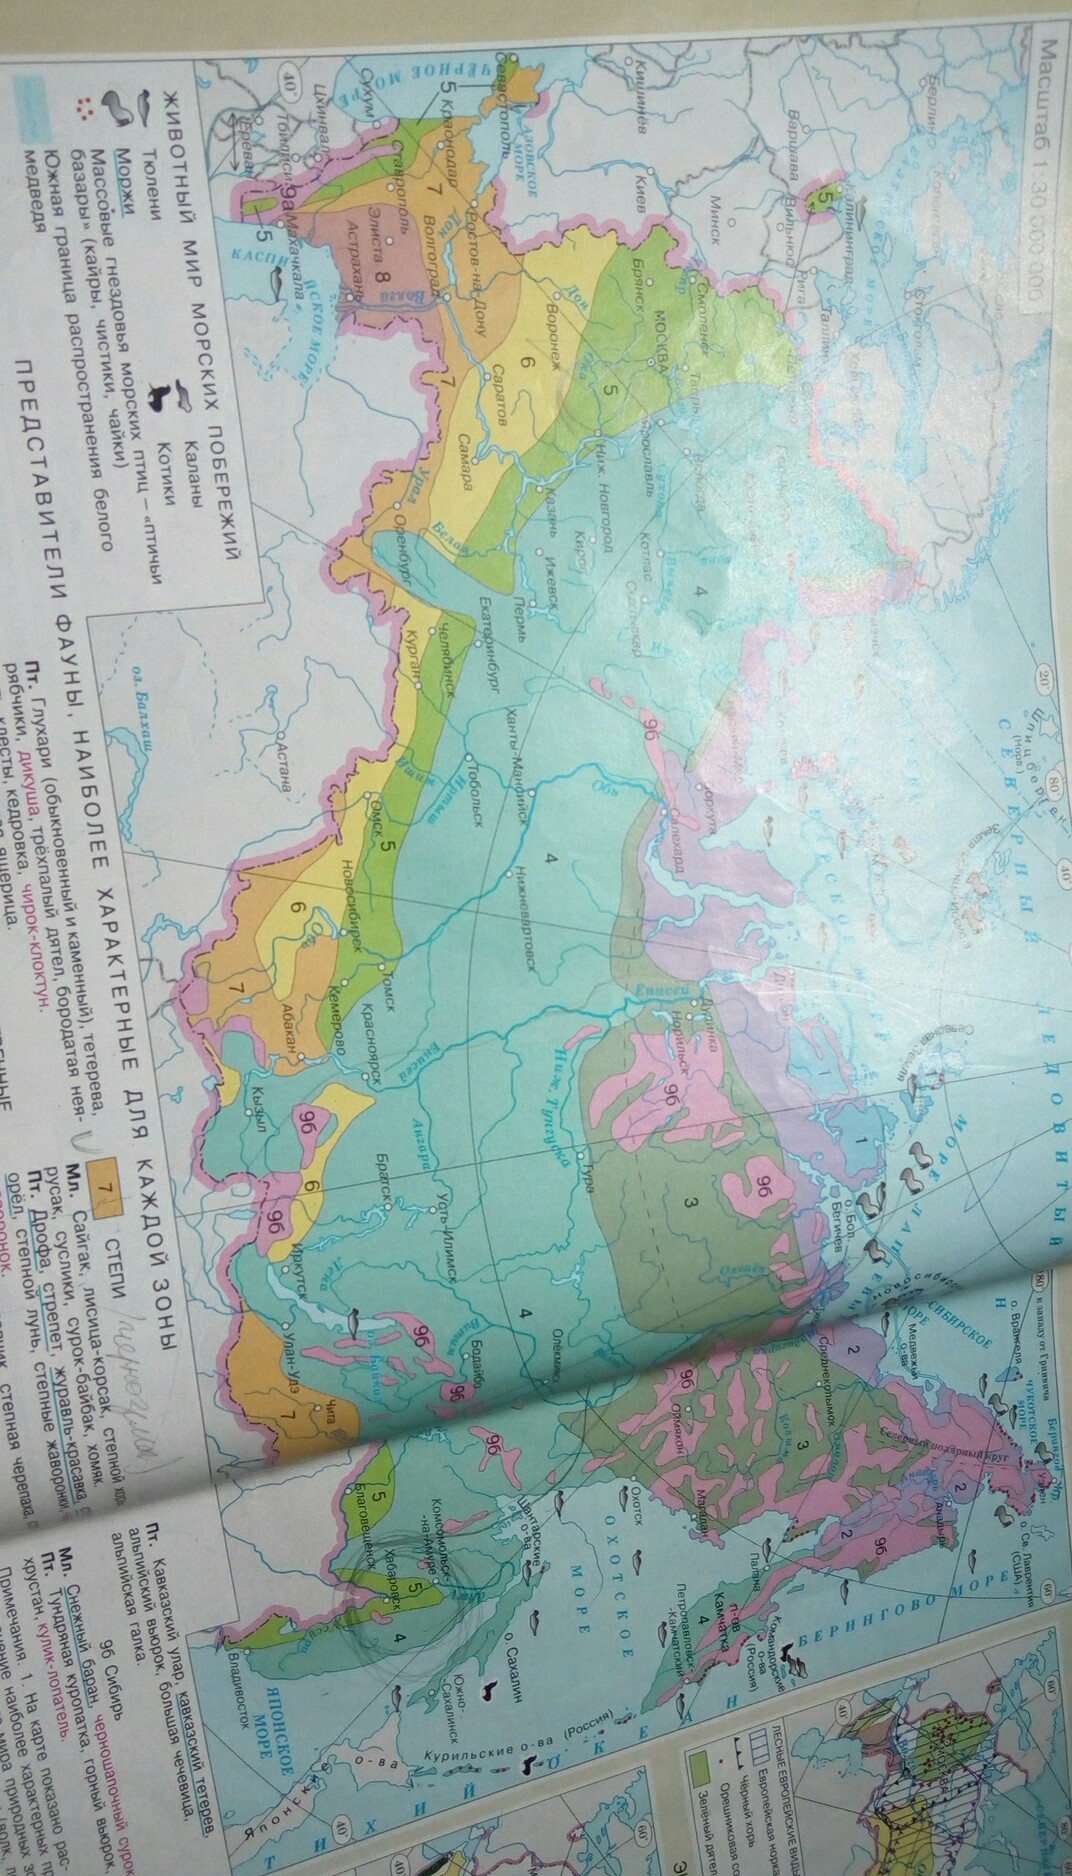 Какой природной зоны нет на европейском юге. Зоны европейского Юга. Природные зоны европейского Юга. Карта природных зон европейского Юга России. Природные зоны Европы Юг России.